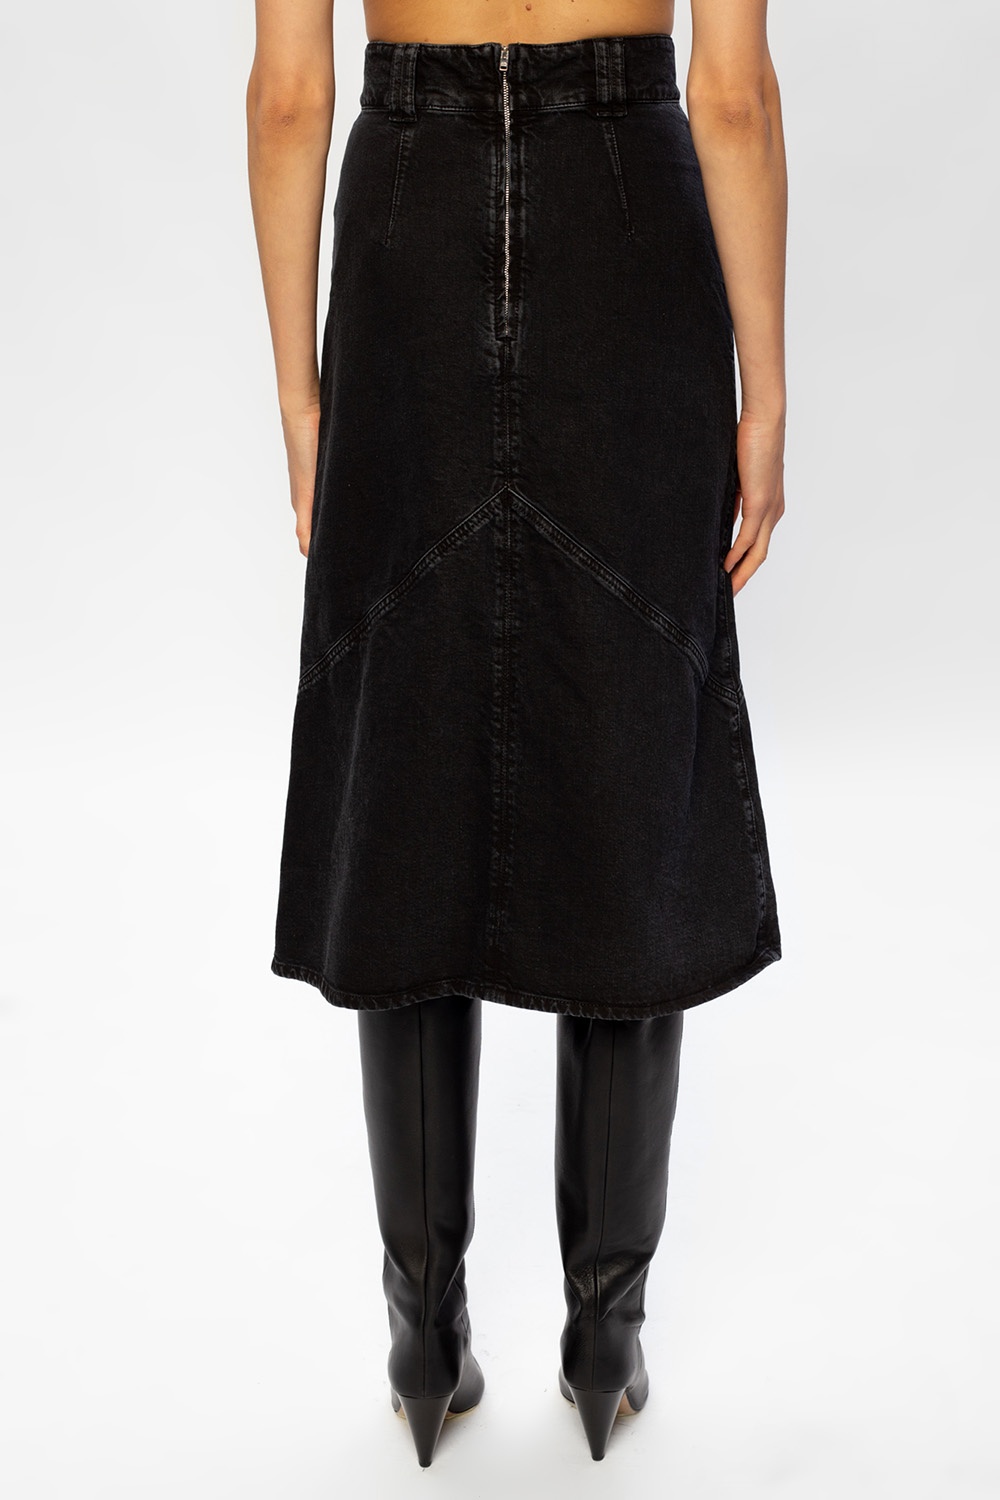 faded black denim skirt